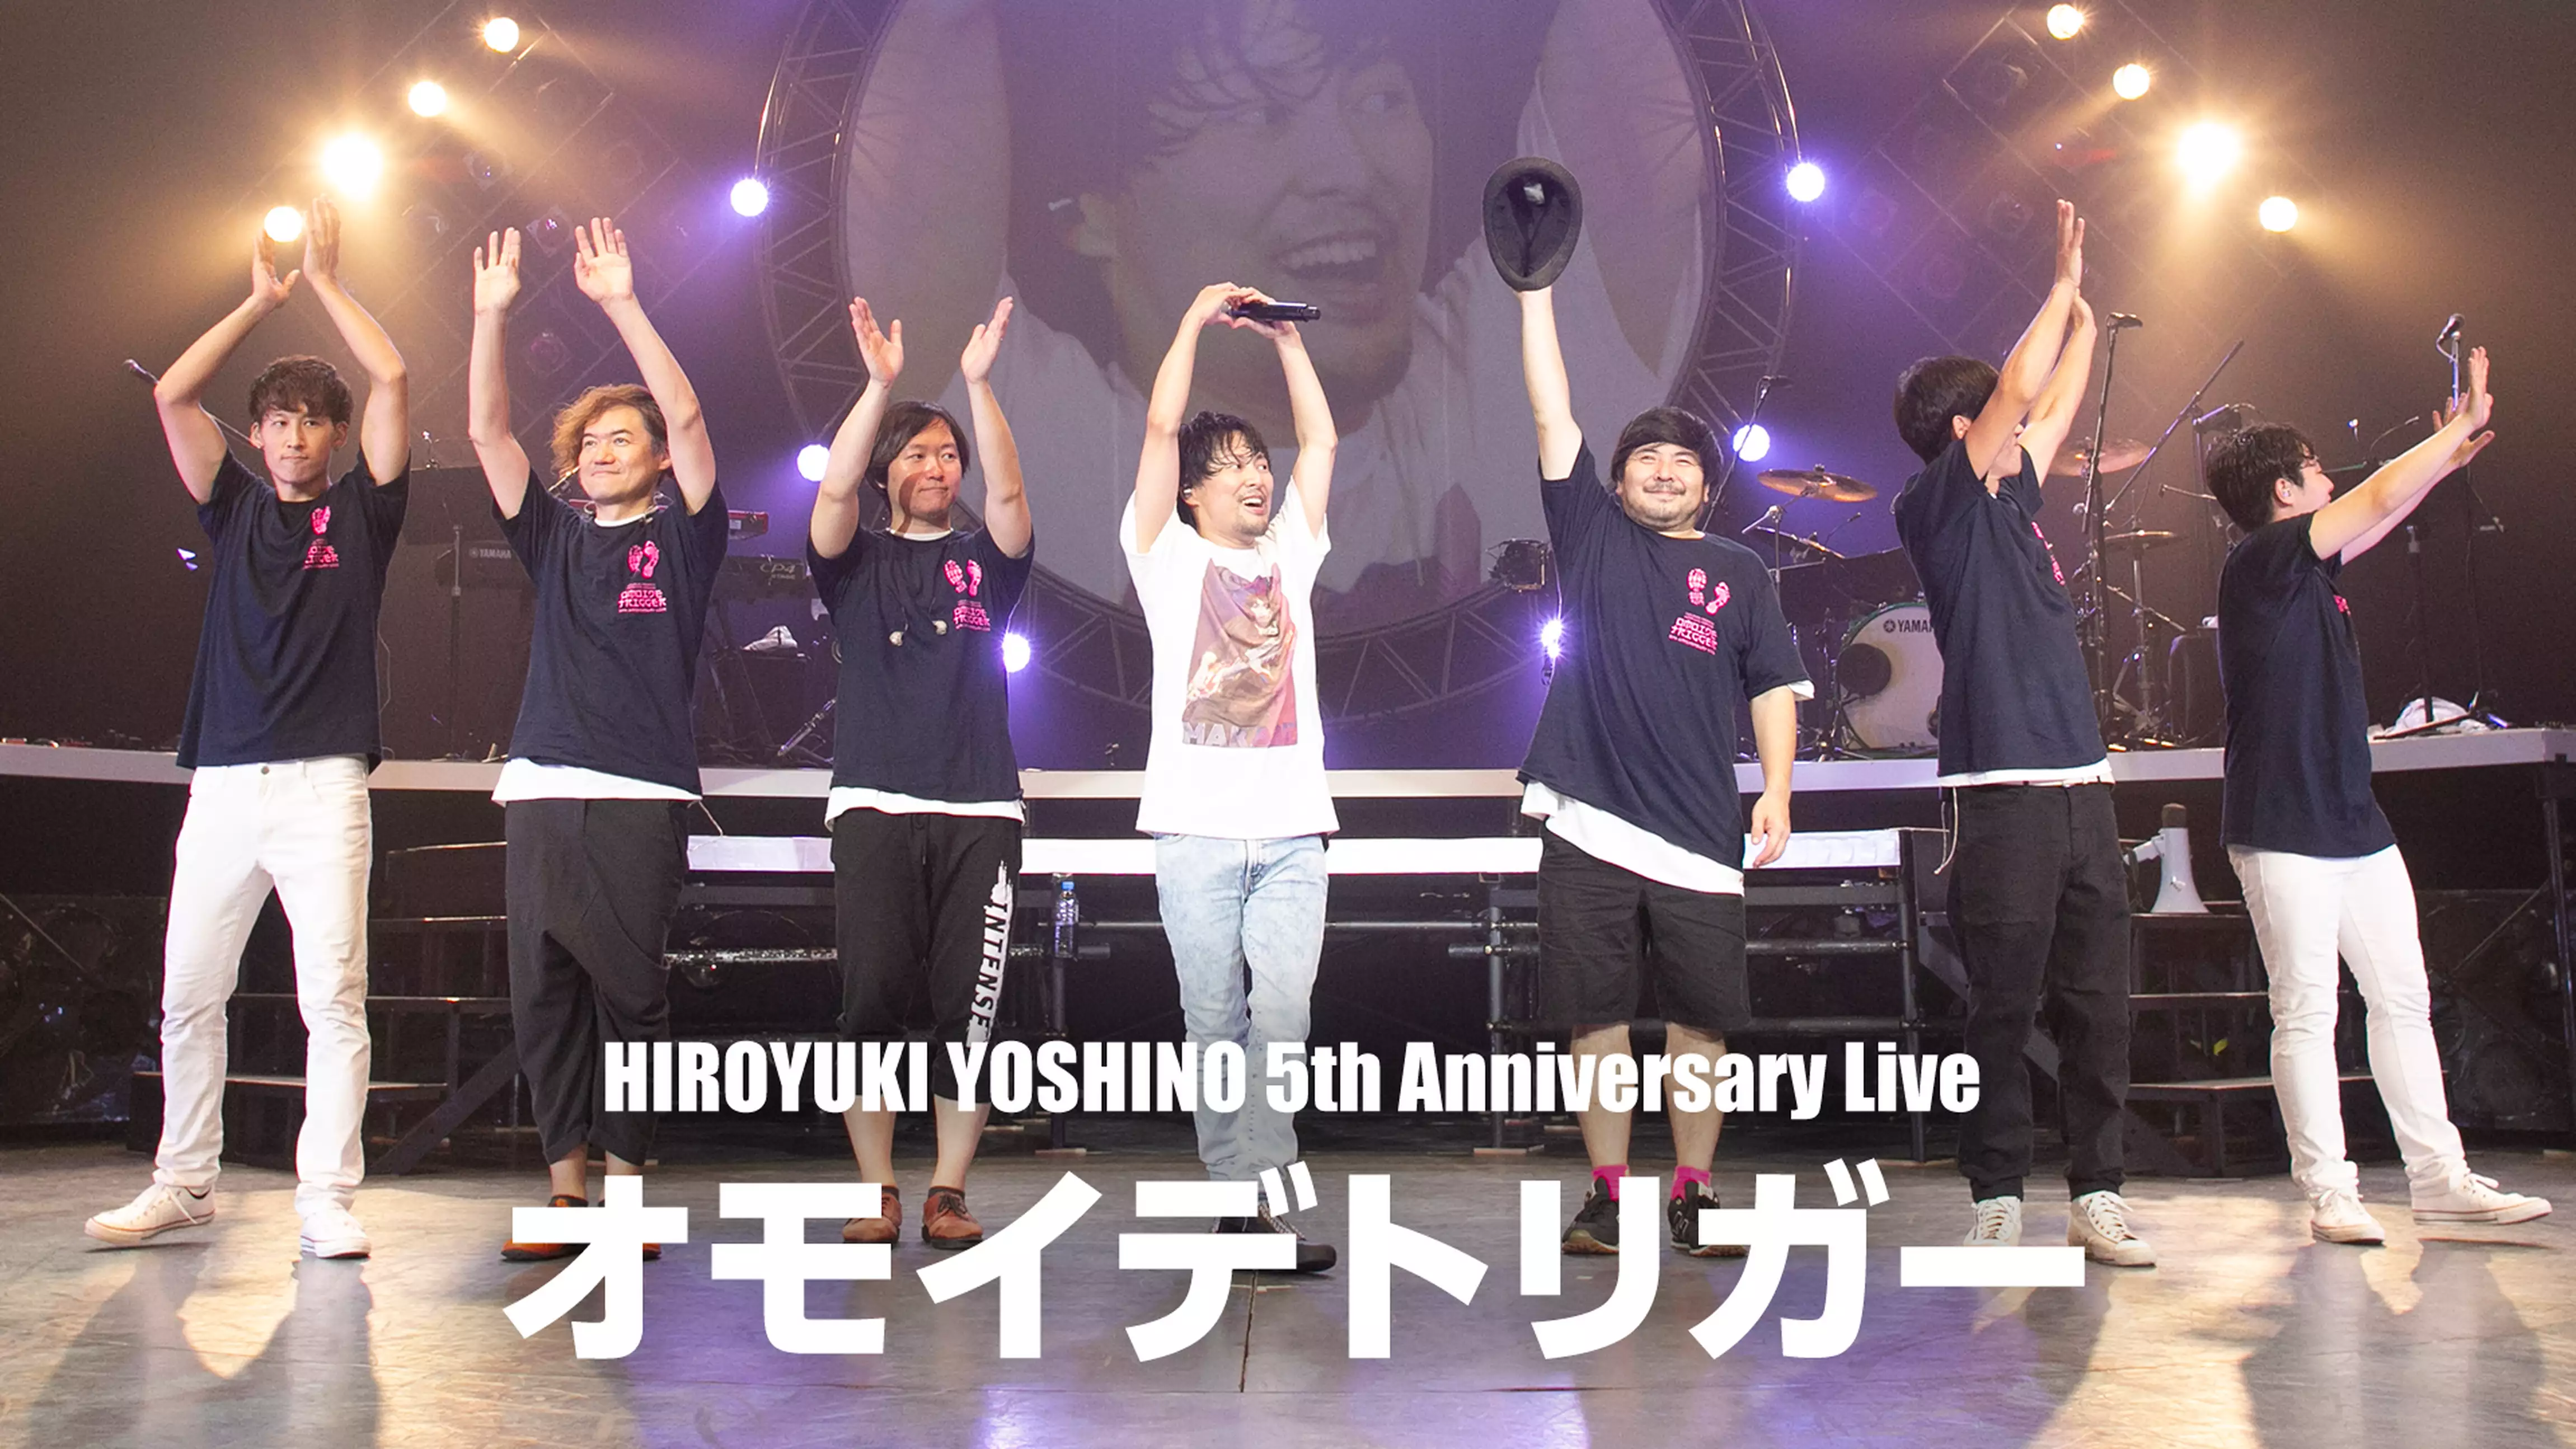 HIROYUKI YOSHINO 5th Anniversary Live “オモイデトリガー”